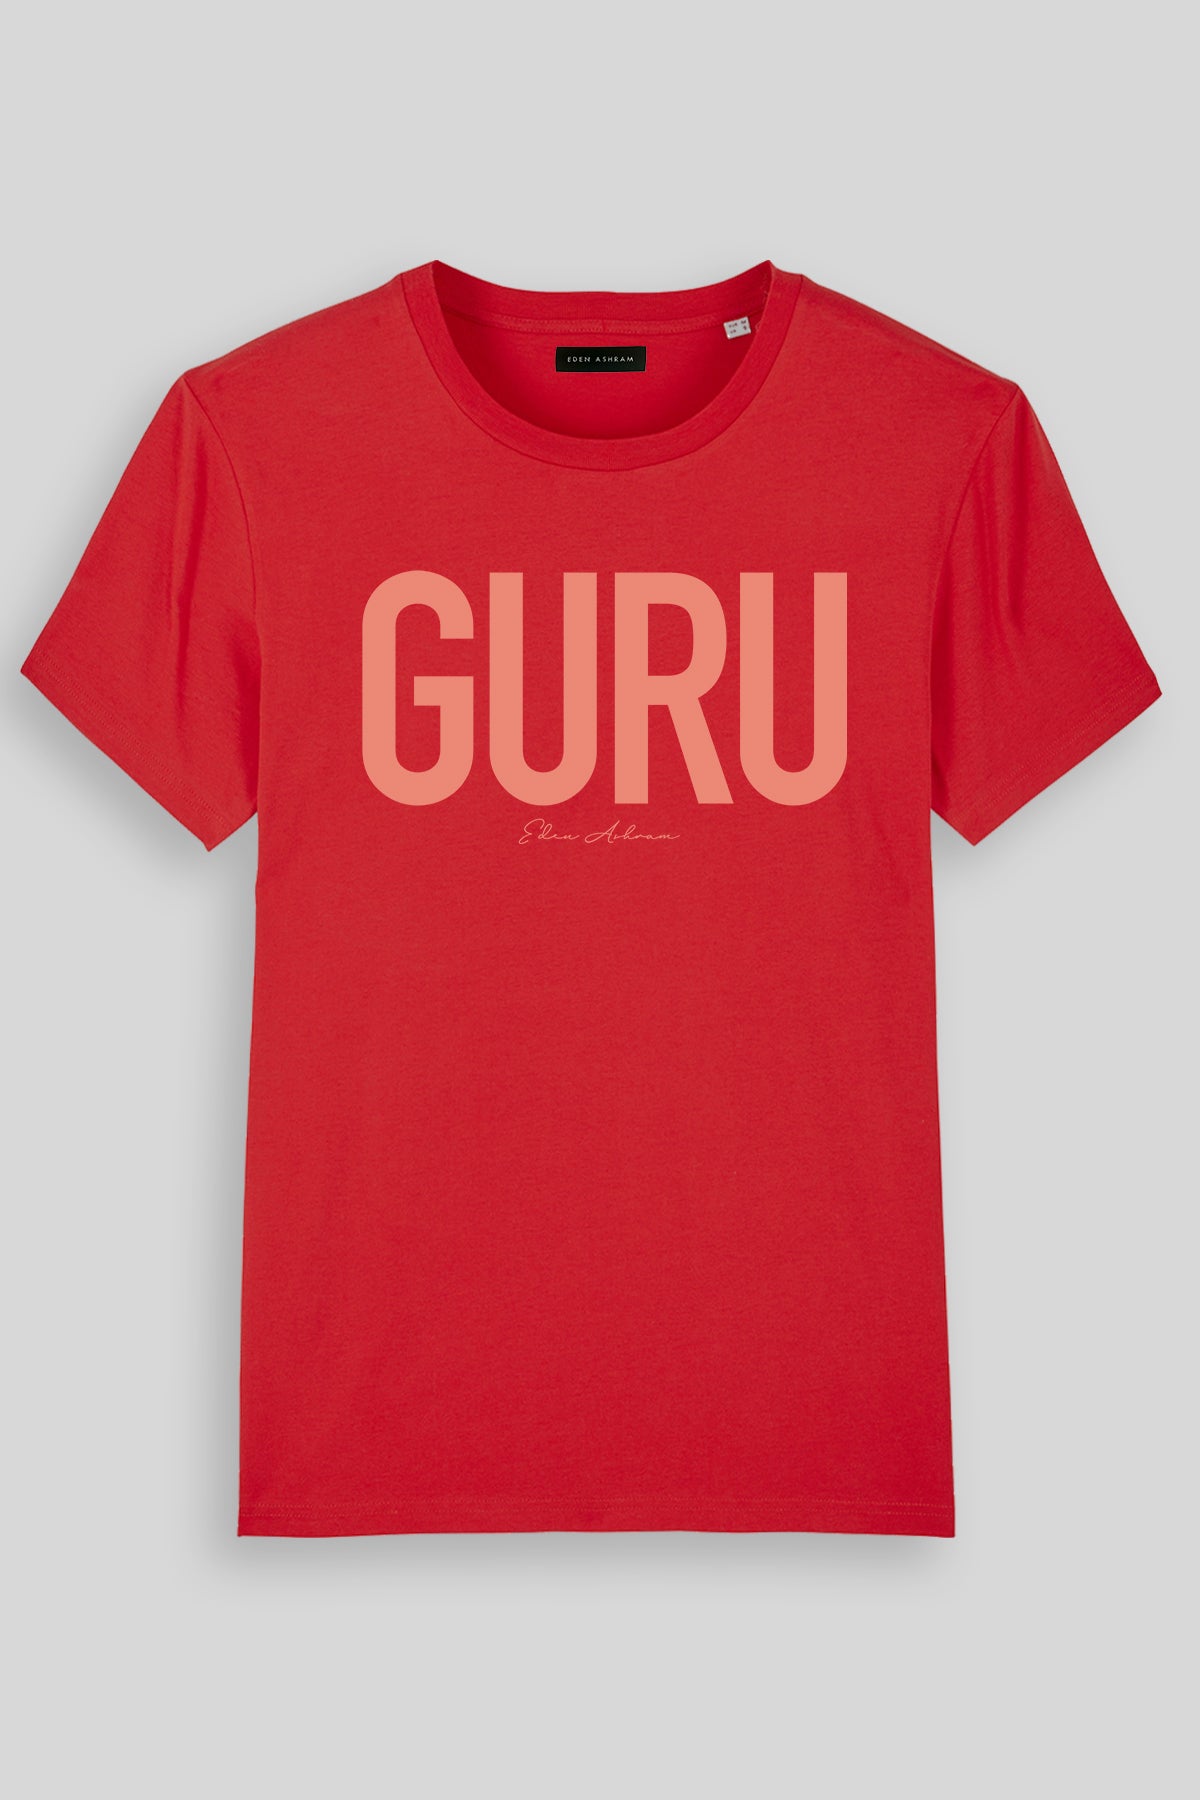 EDEN ASHRAM Guru Premium Classic T-Shirt Red